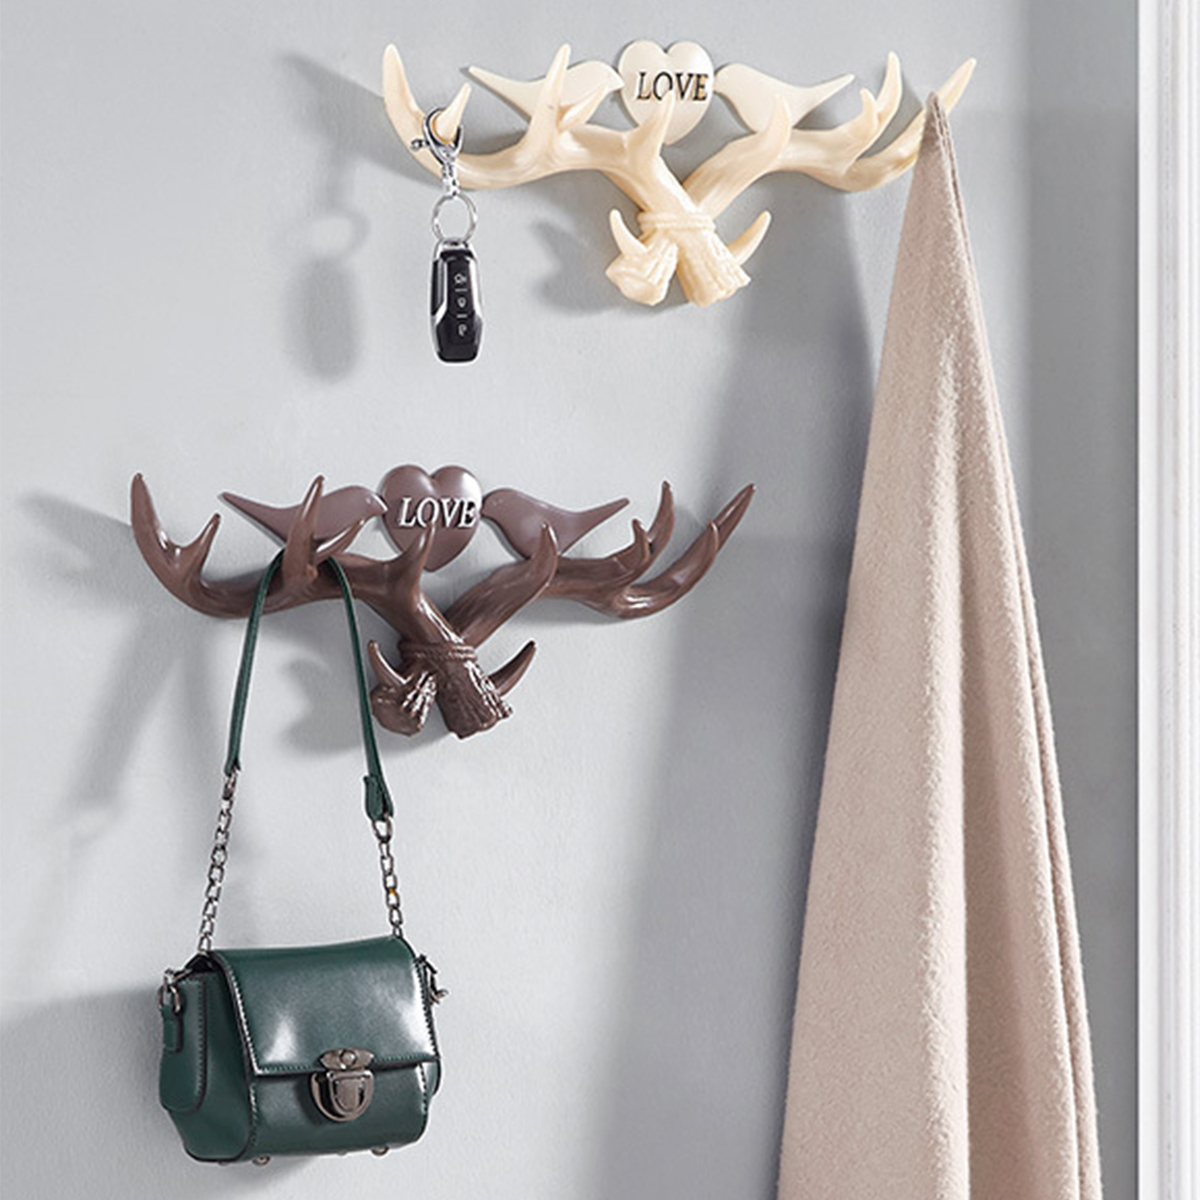 

Love Vintage Deer Antler Wall Hanger Decoration Coat Hook And Hat Rack 4 Color Holder